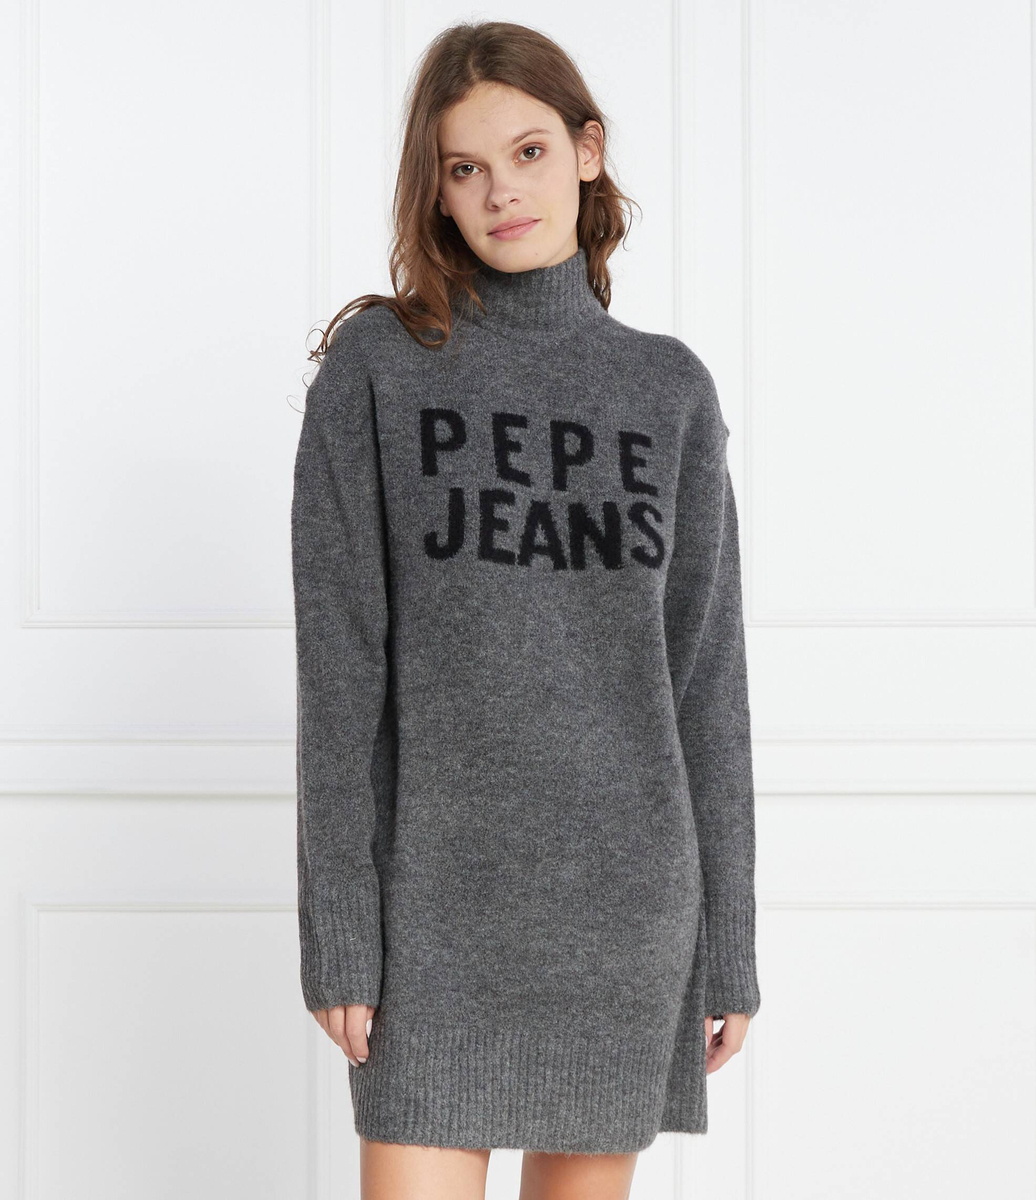 Pepe Jeans dámské šedé šaty DENISSE s potiskem - S (963)